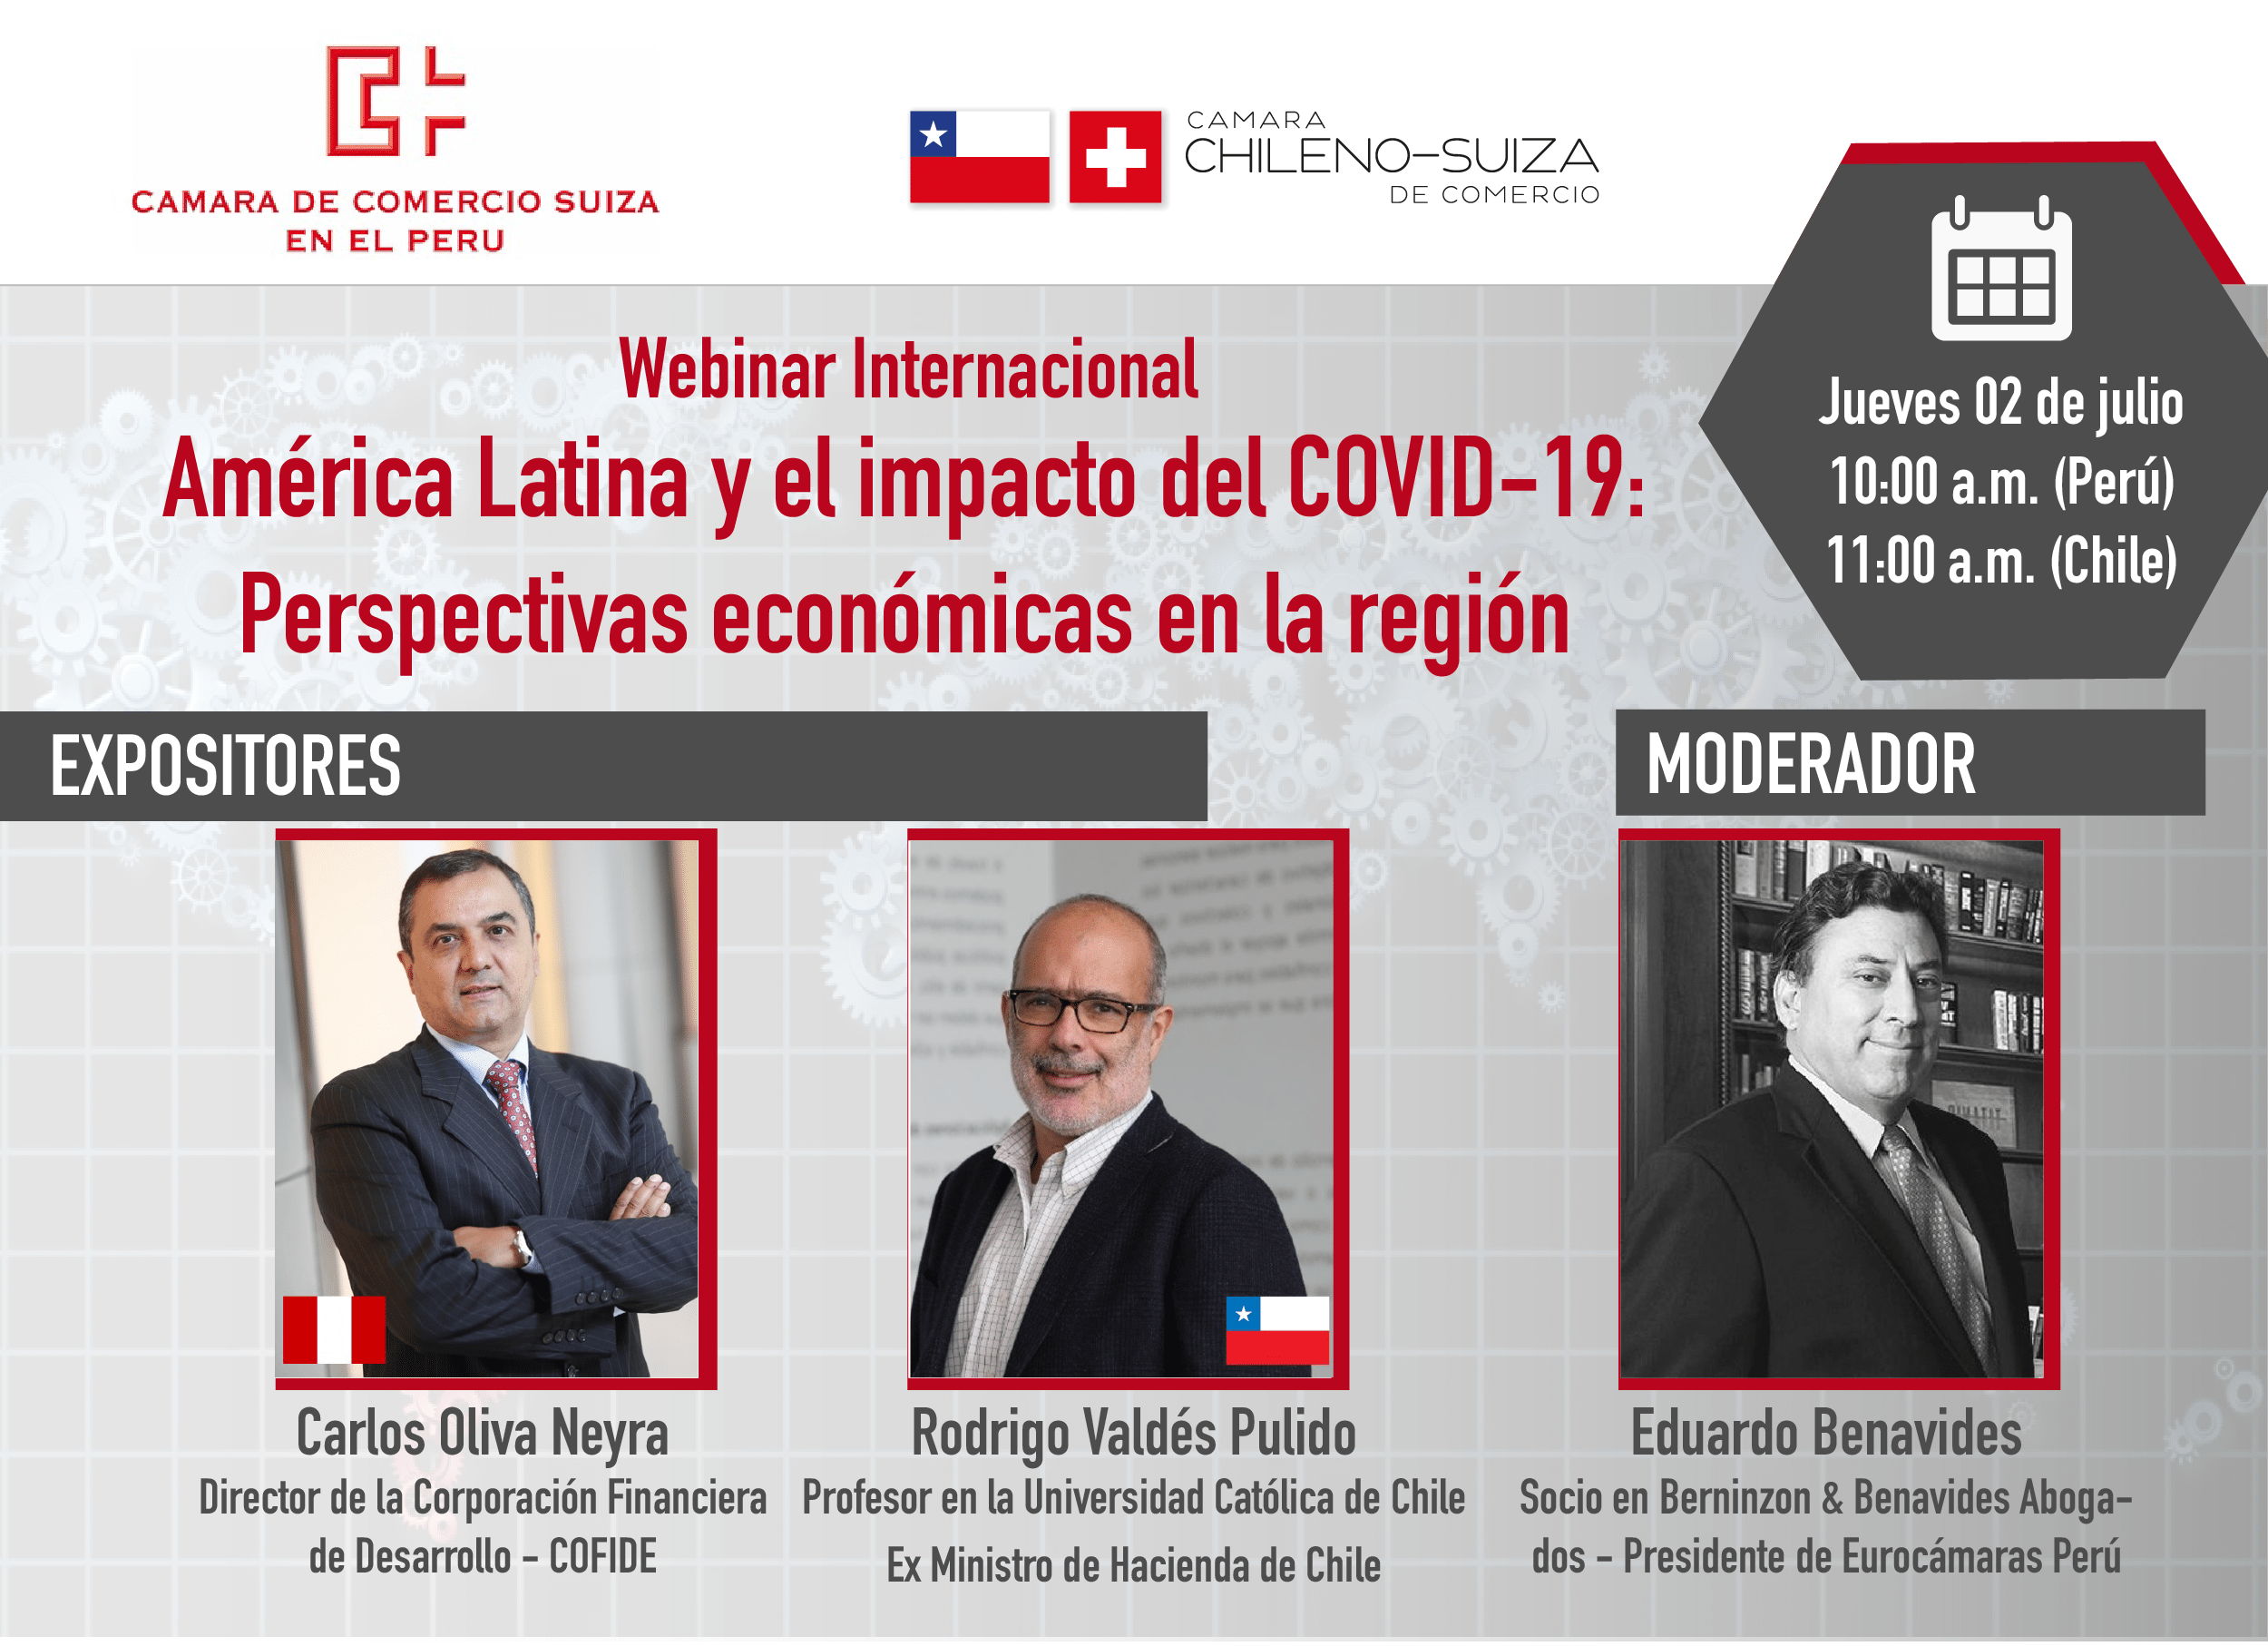 Webinar Internacional "América Latina y el impacto del COVID-19: Perspectivas económicas en la región"